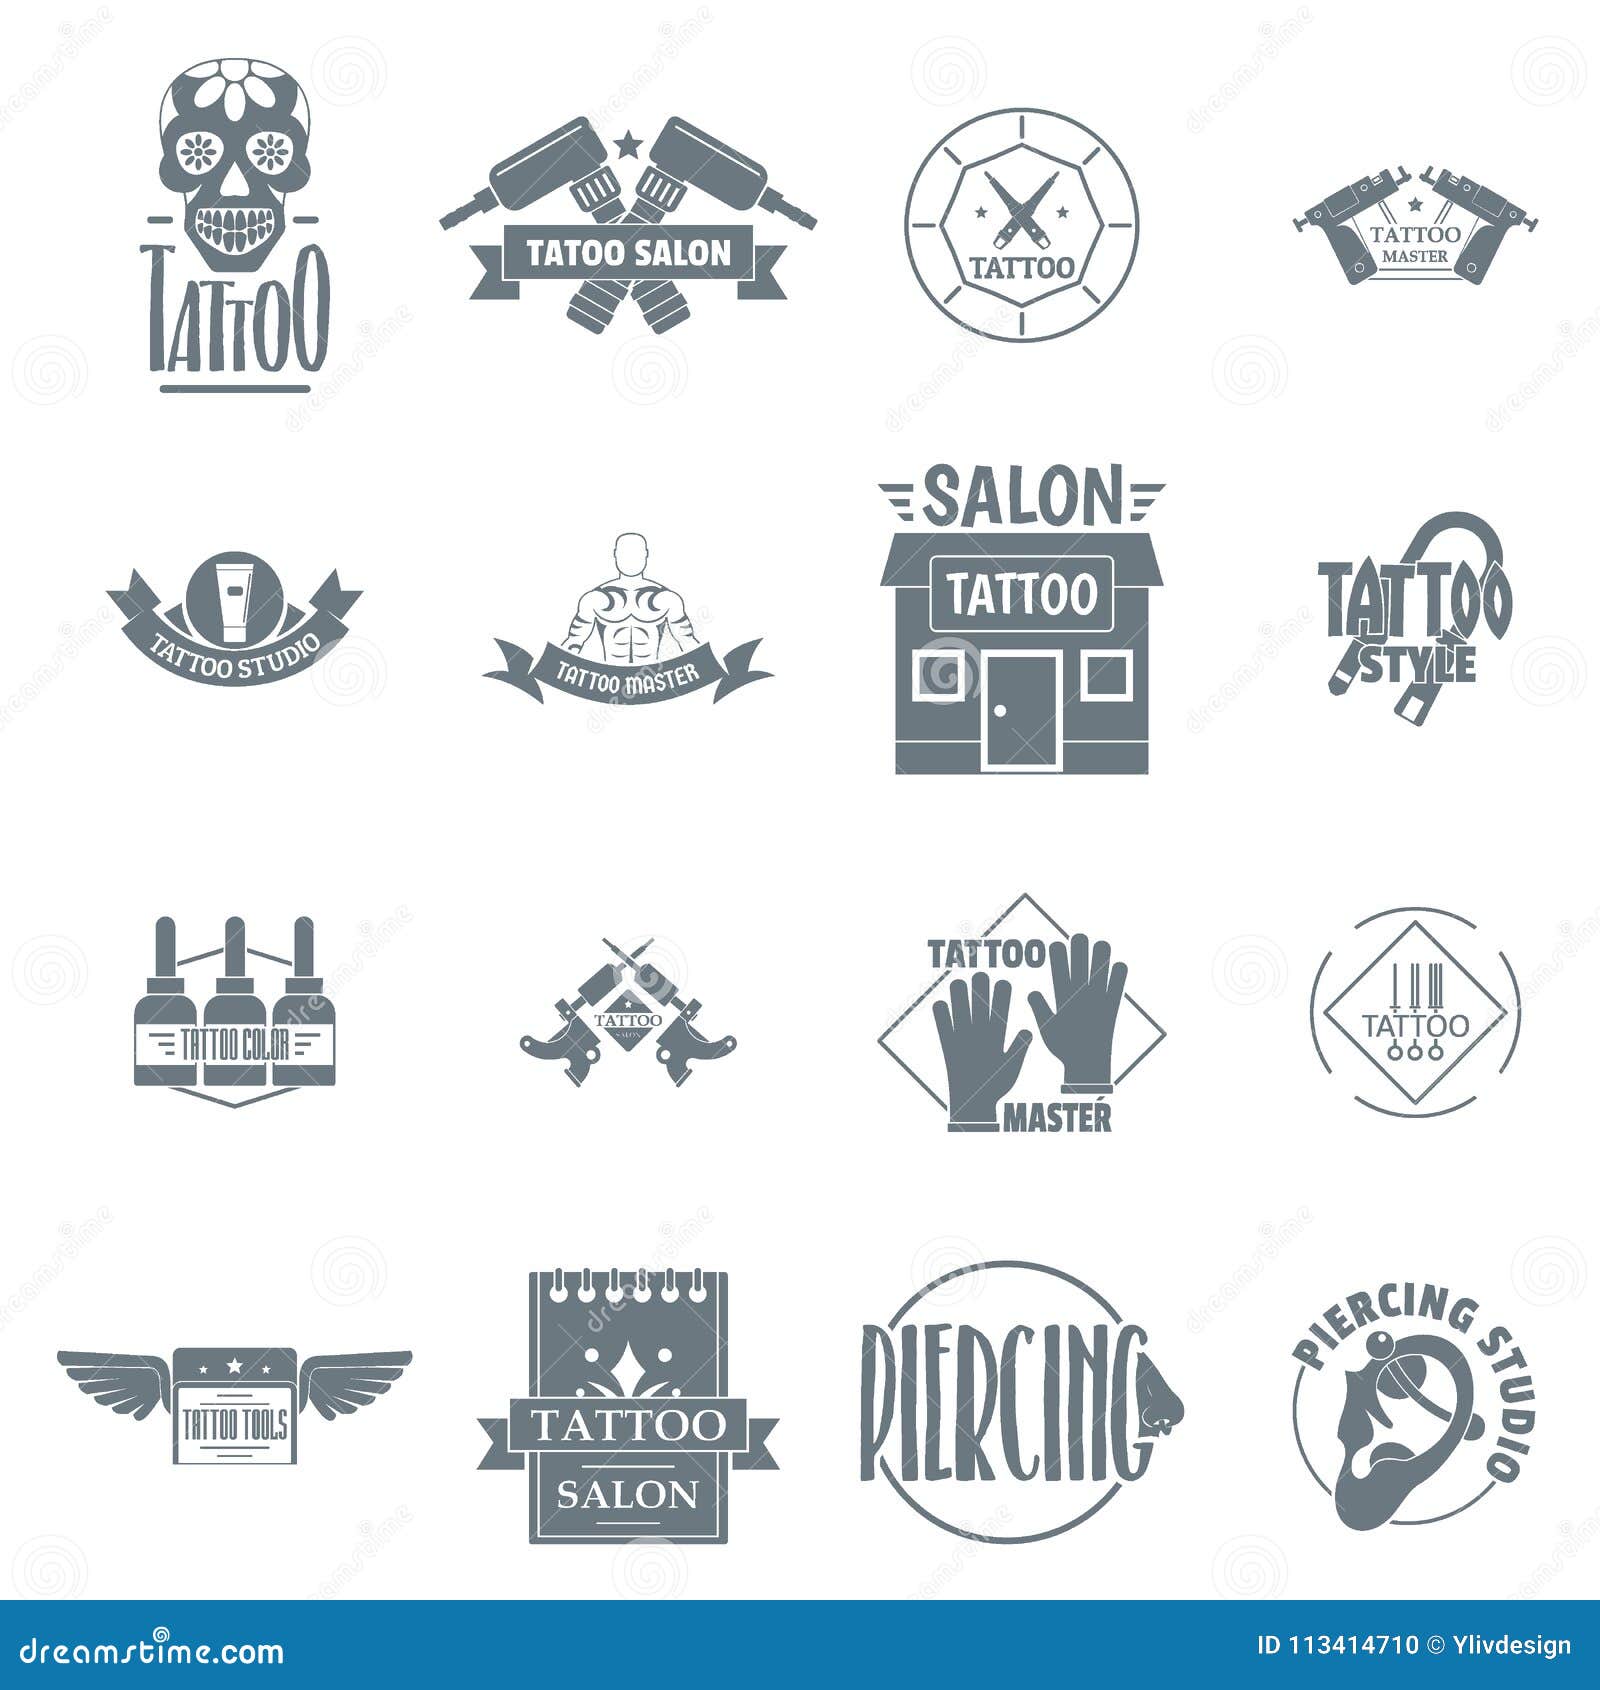 Premium Vector | Tattoo machine logo design vector illustration template